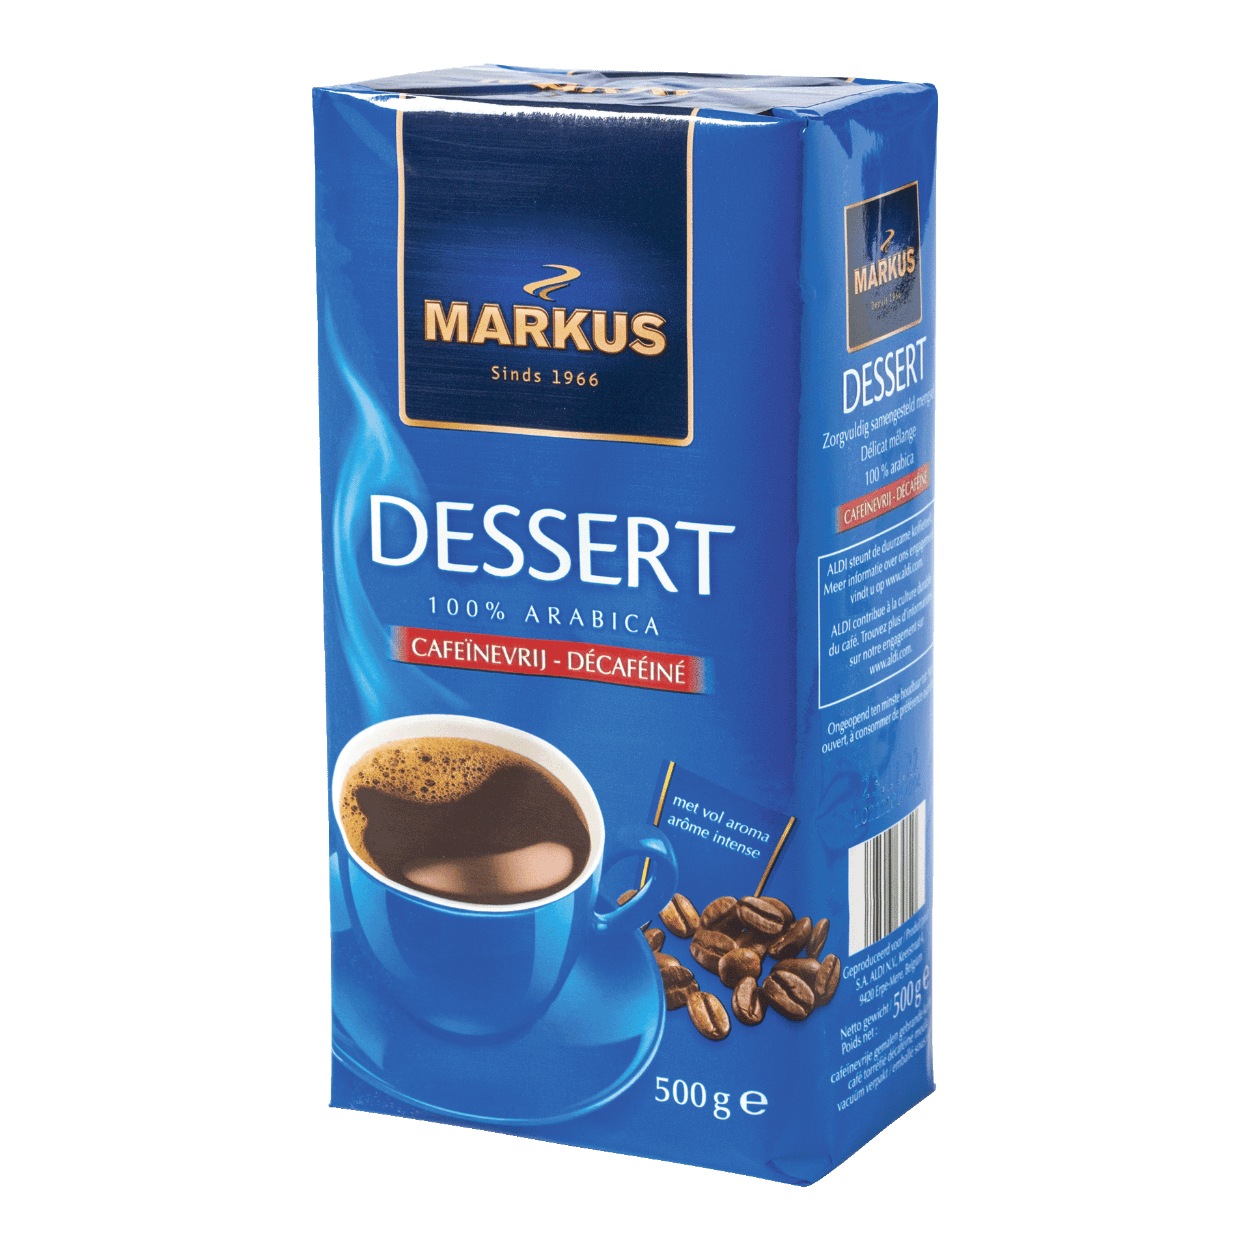 droog Talloos weefgetouw MARKUS® Koffie Dessert cafeïnevrij kopen bij ALDI België